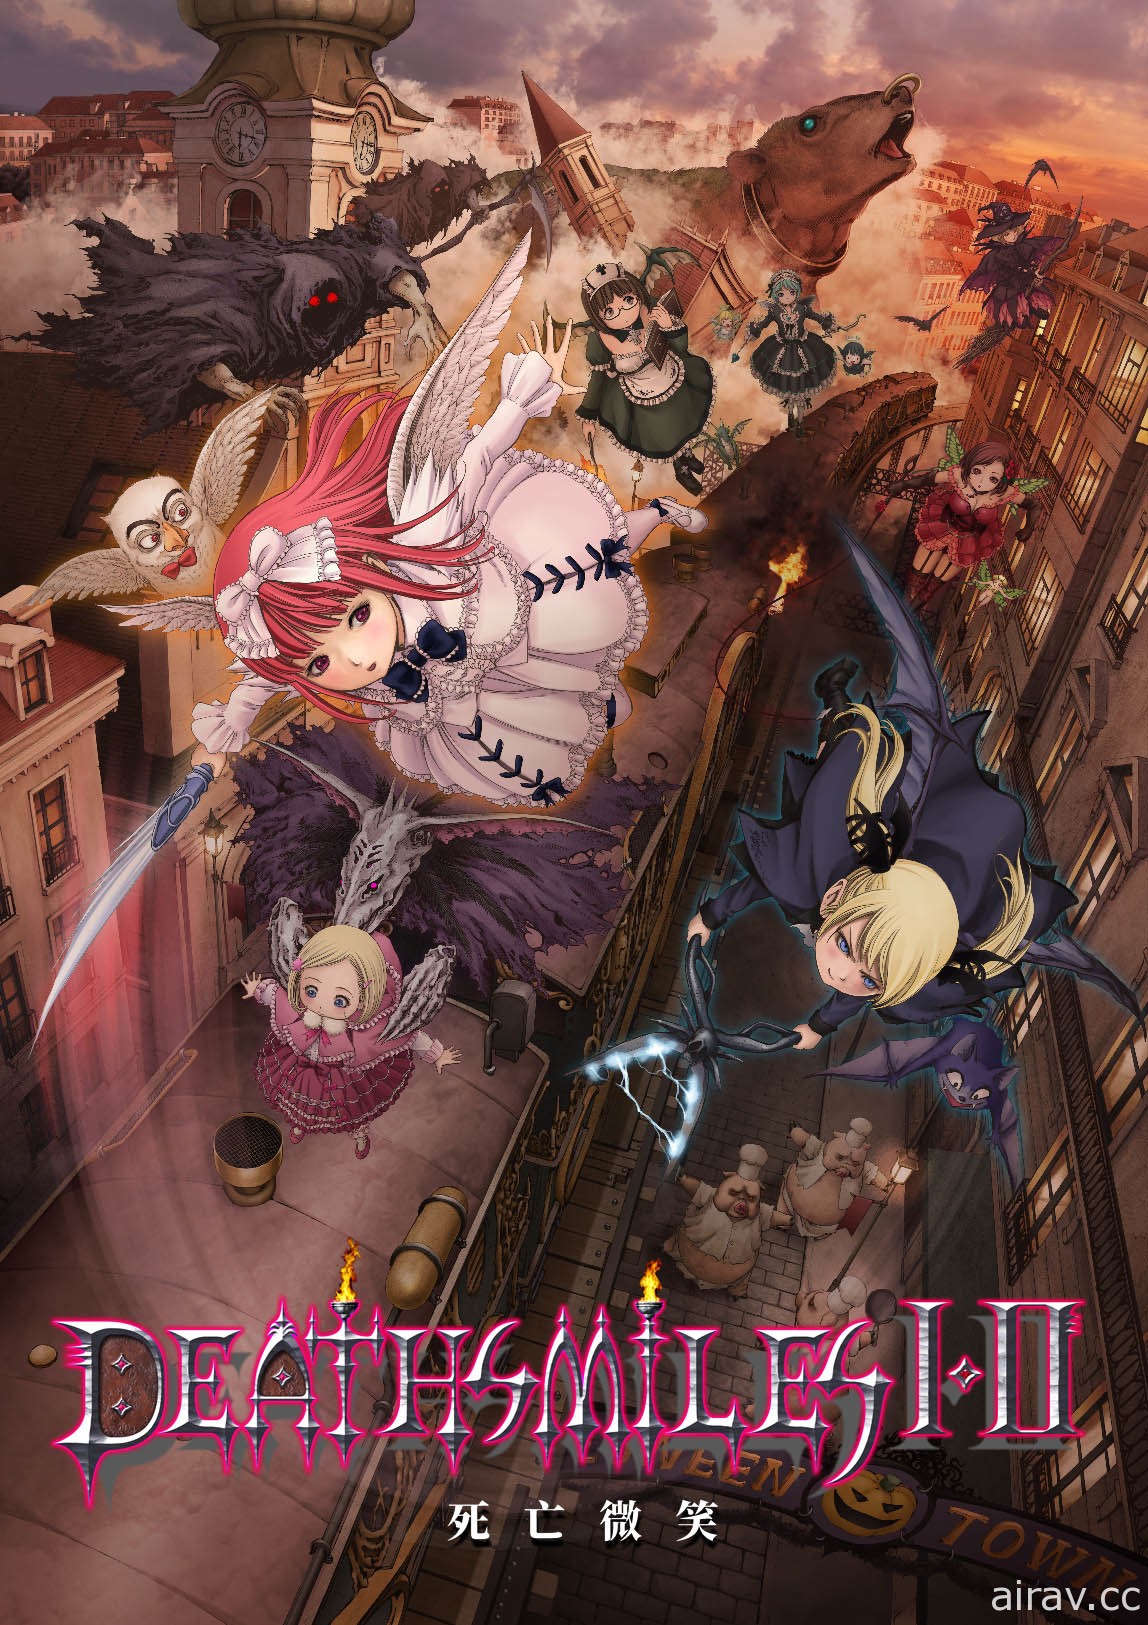 射擊遊戲《死亡微笑 I・II》將推中文版 對應《哥德系魔法少女》追加角色